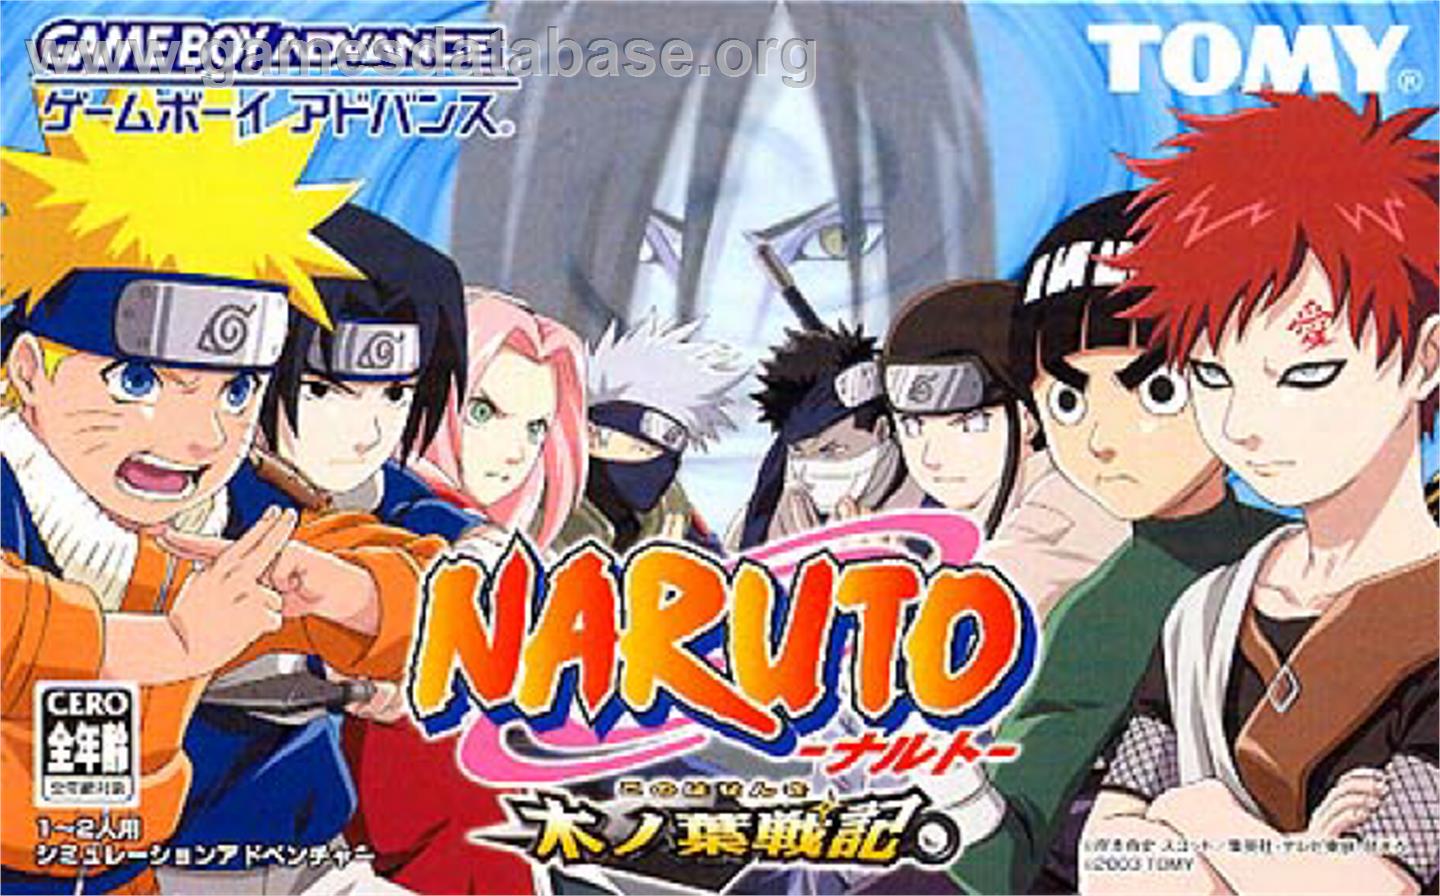 Naruto Konoha Senki - Nintendo Game Boy Advance - Artwork - Box